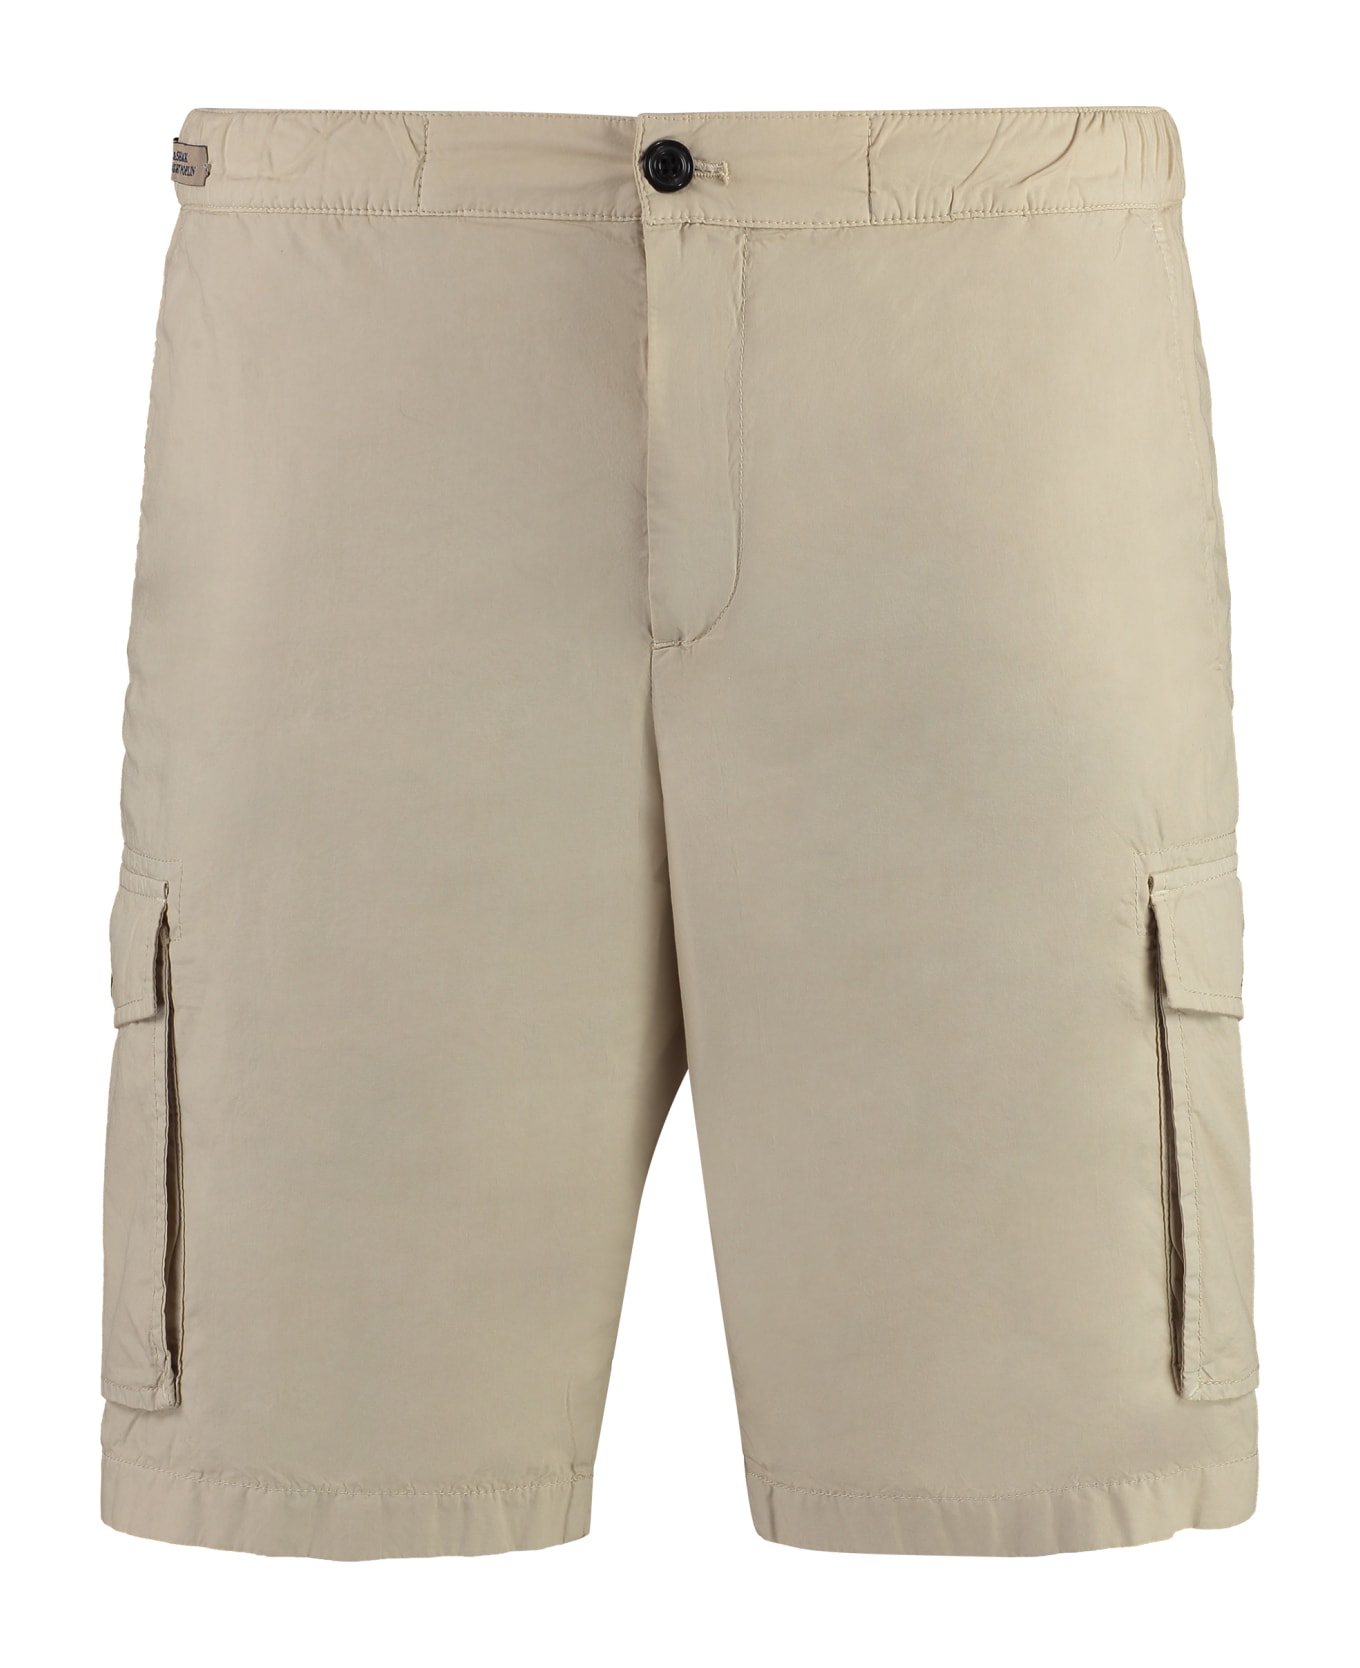 Paul&Shark Cotton Bermuda Shorts - Sand